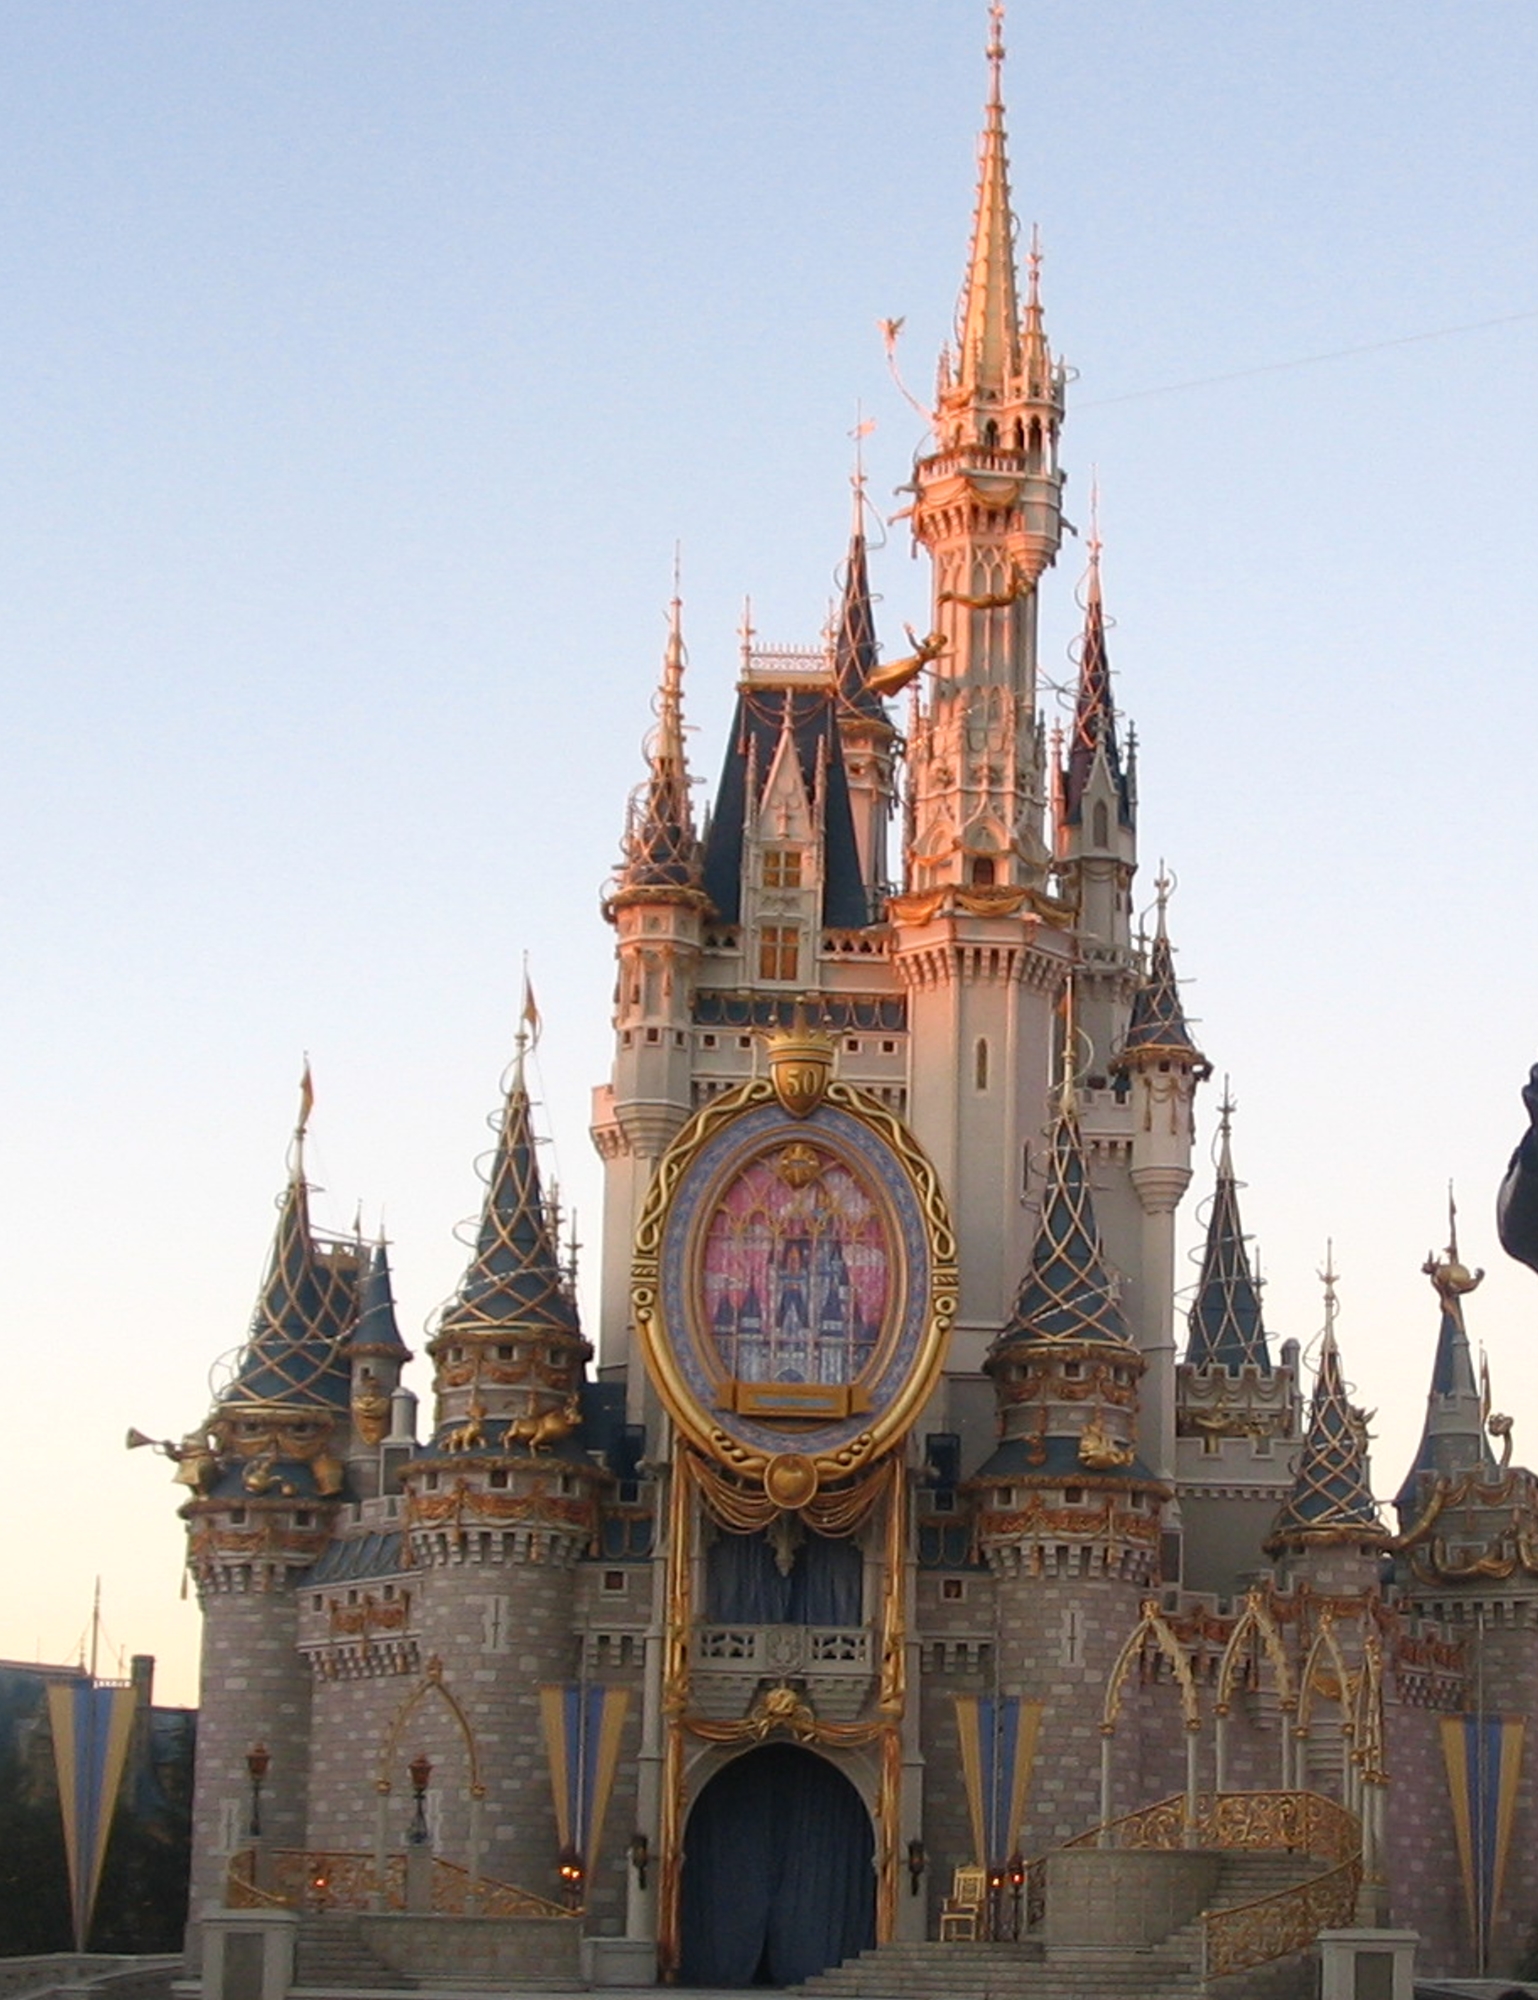 Cinderella's Castle - 50th Anniversary decorations